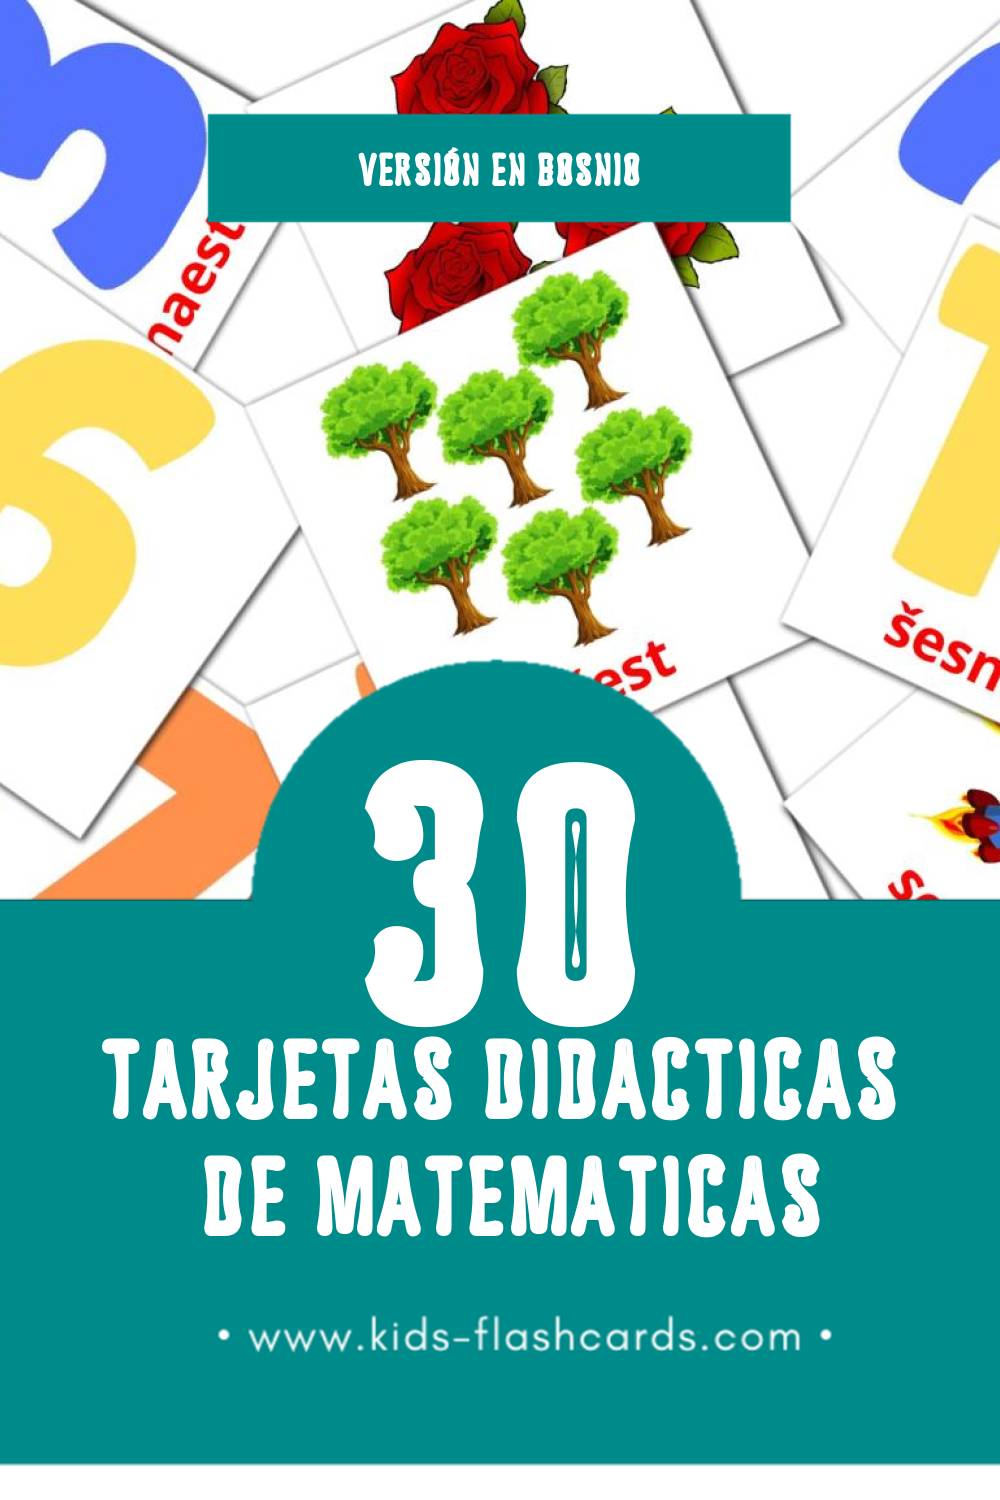 Tarjetas visuales de Maths para niños pequeños (30 tarjetas en Bosnio)